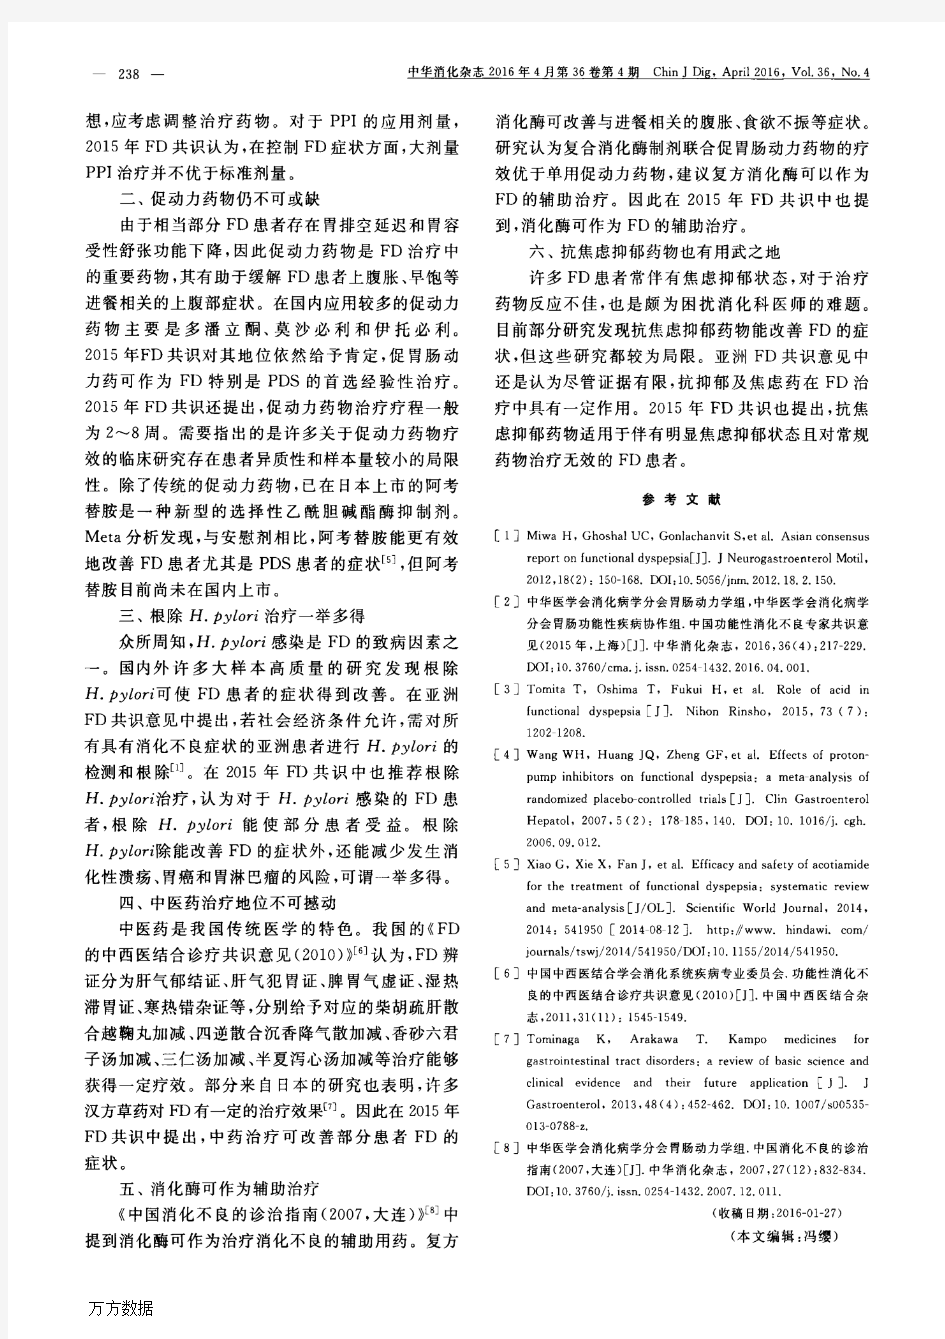 中国功能性消化不良专家共识意见(2015年,上海)解读药物治疗论文